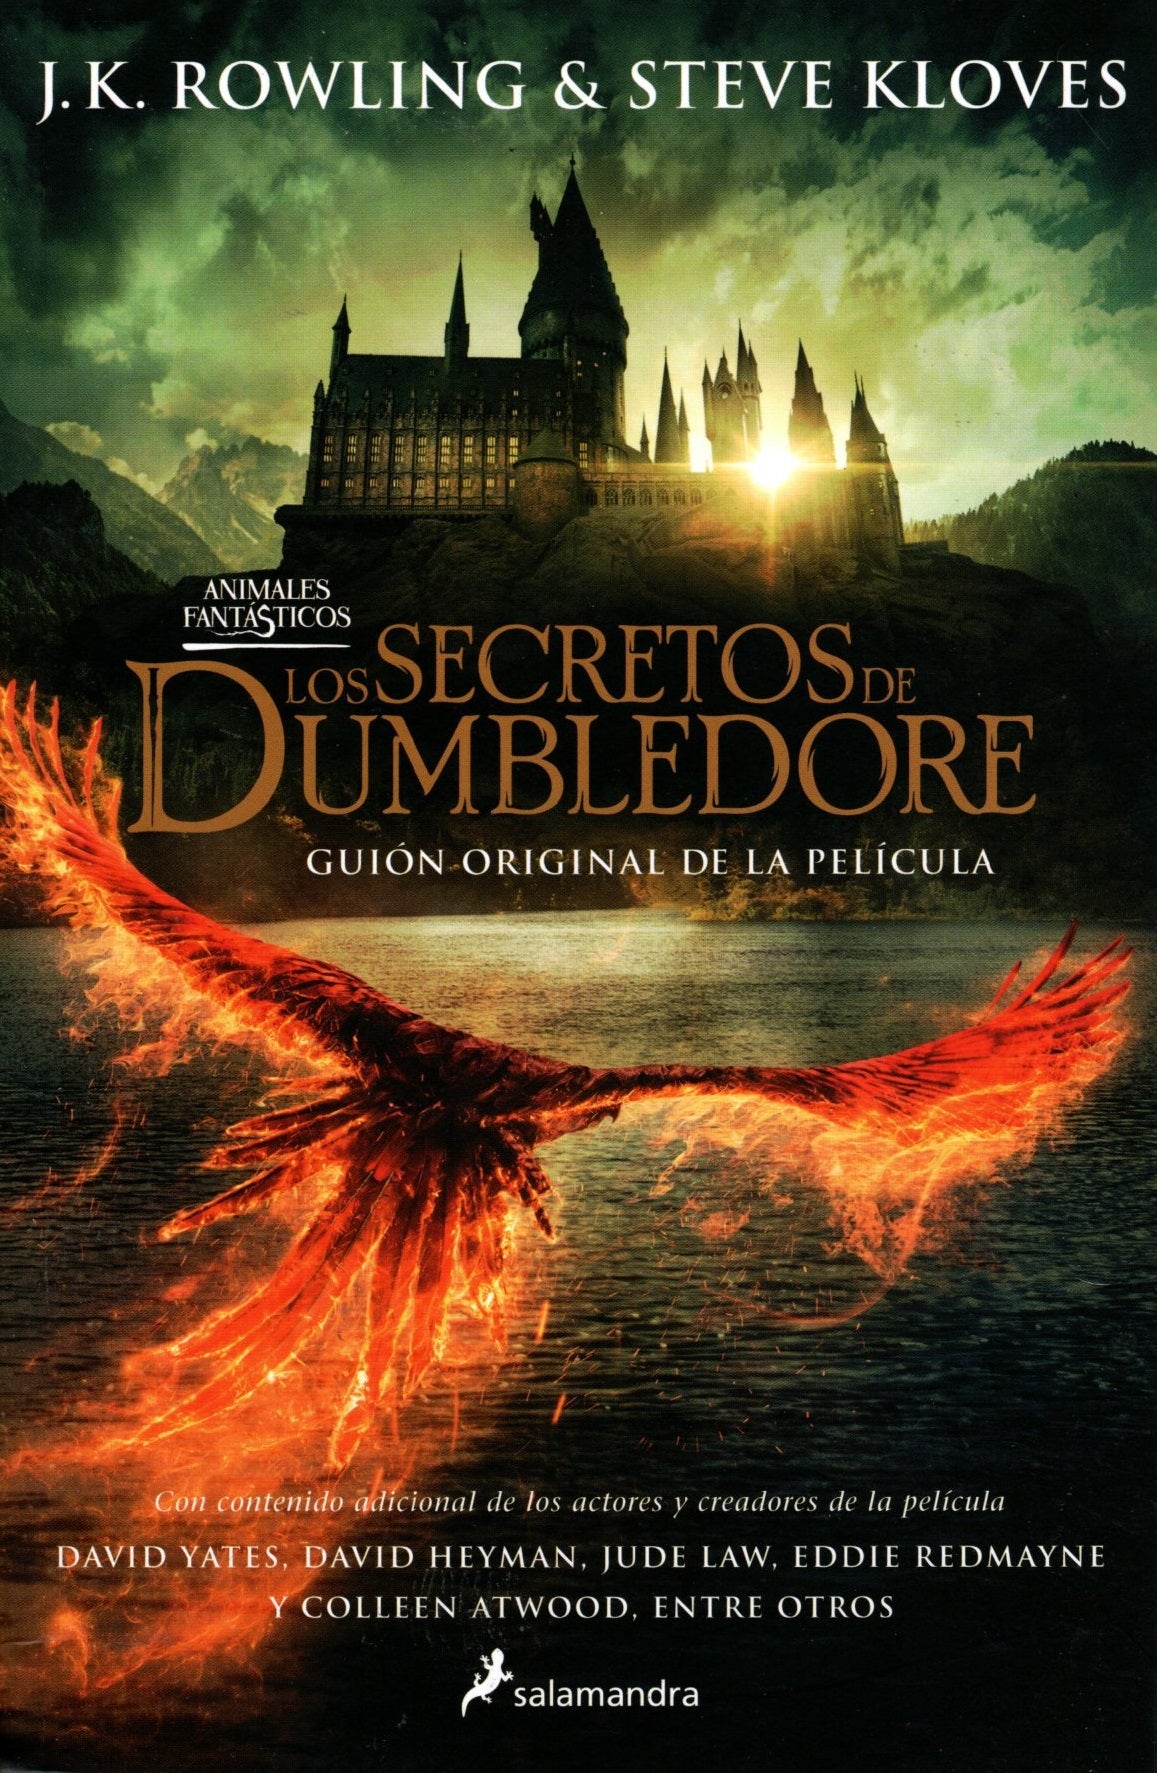 Libro Los secretos de Dumbledore - J.K. Rowling & Steve Kloves